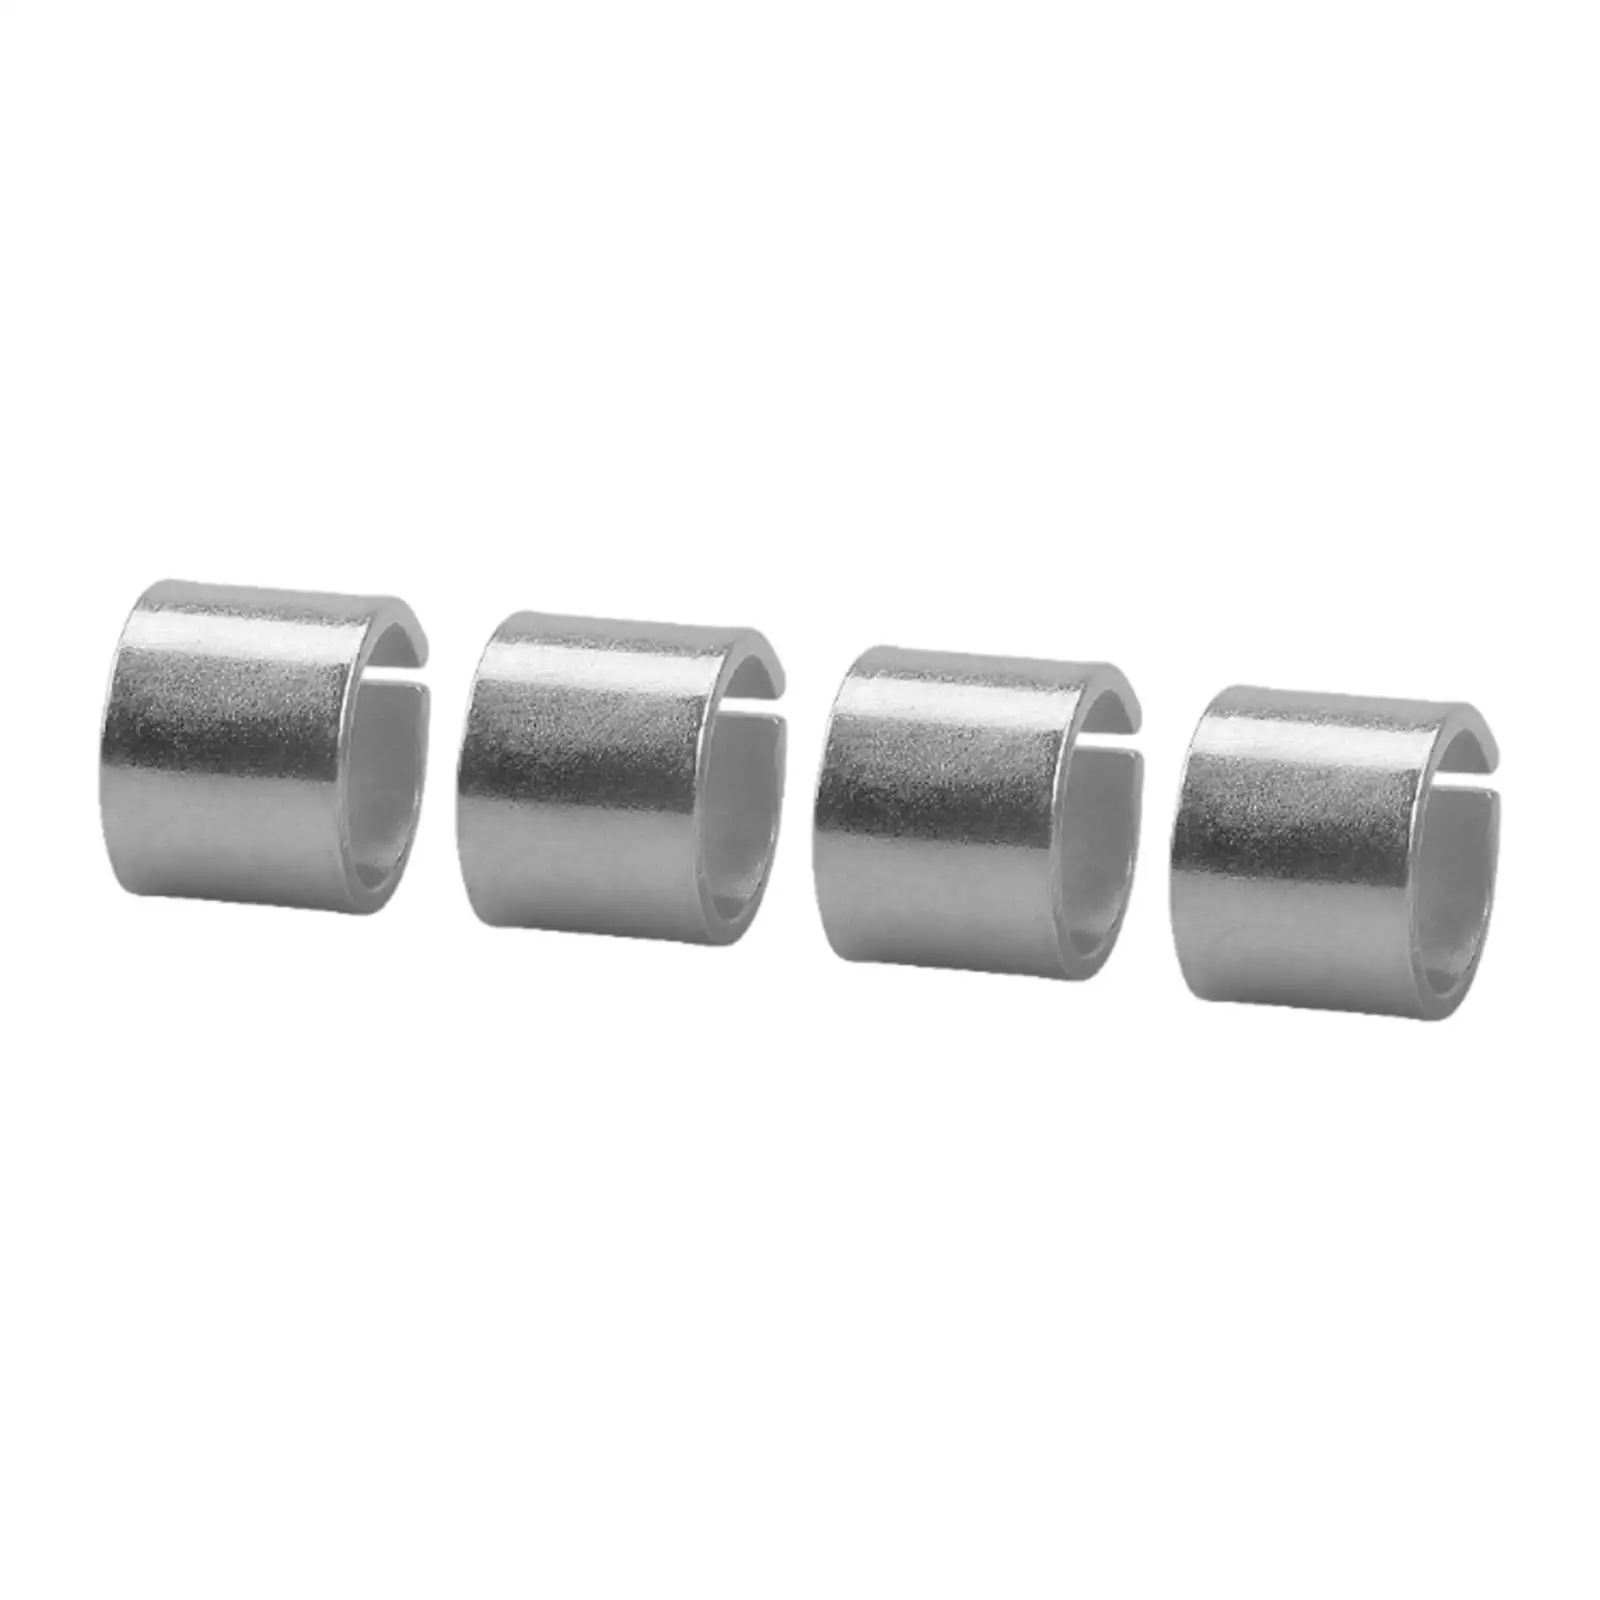 4x ,Cylinder Head Dowel Pin ,Head Dowel Alignment Pin, Durable replace ls LT Accessory L87 lt L8B L33 LR4 L82 LS1 LS3 LS2 Lq4